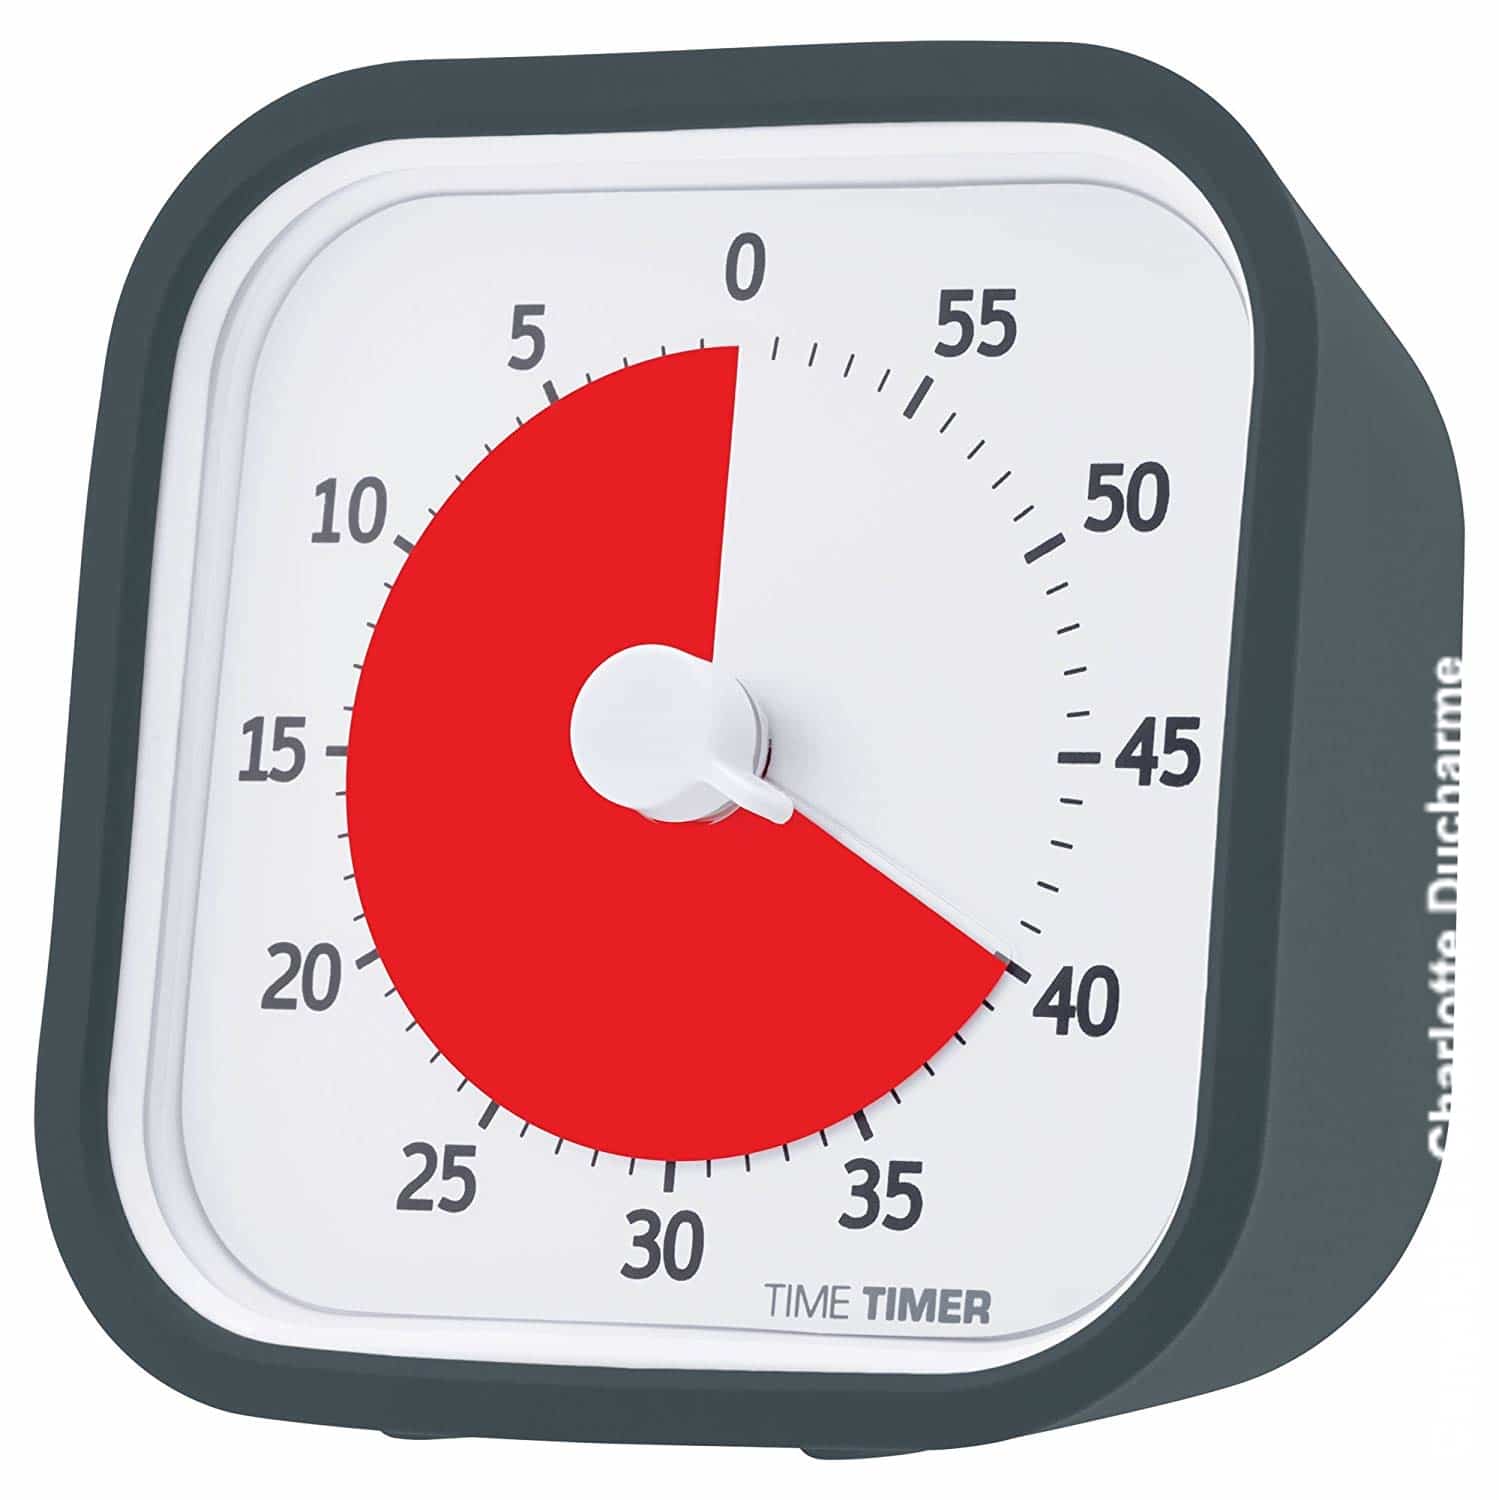 Nous avons testé la minuterie Time Timer PLUS : une astuce pour parents -  Bouge Petit - Centre de développement physique pour bébés et jeunes enfants